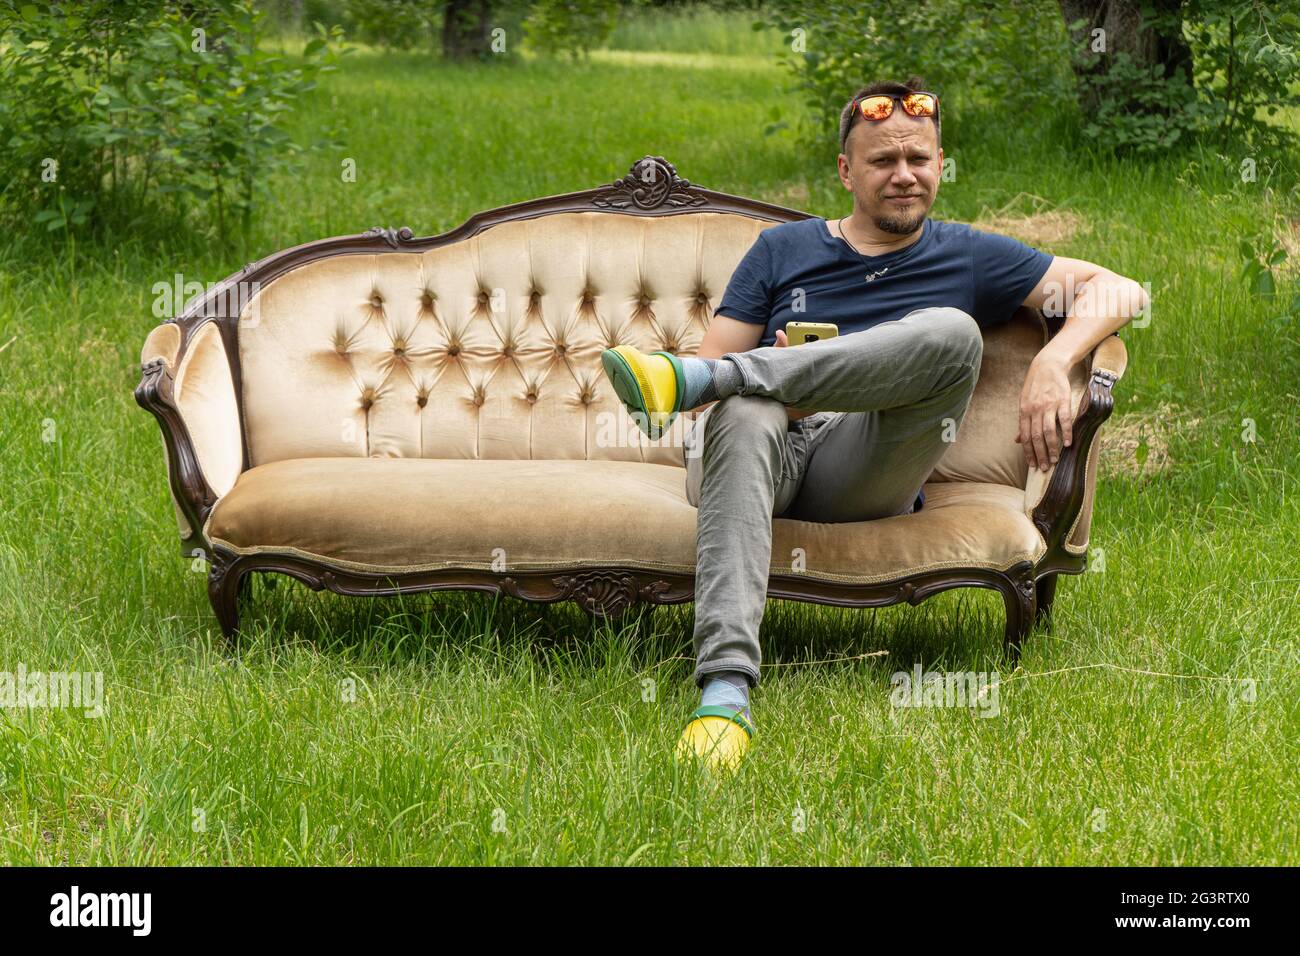 L'uomo di mezza età si rilassa seduto su un comodo divano in giardino all'aperto. Foto di alta qualità Foto Stock